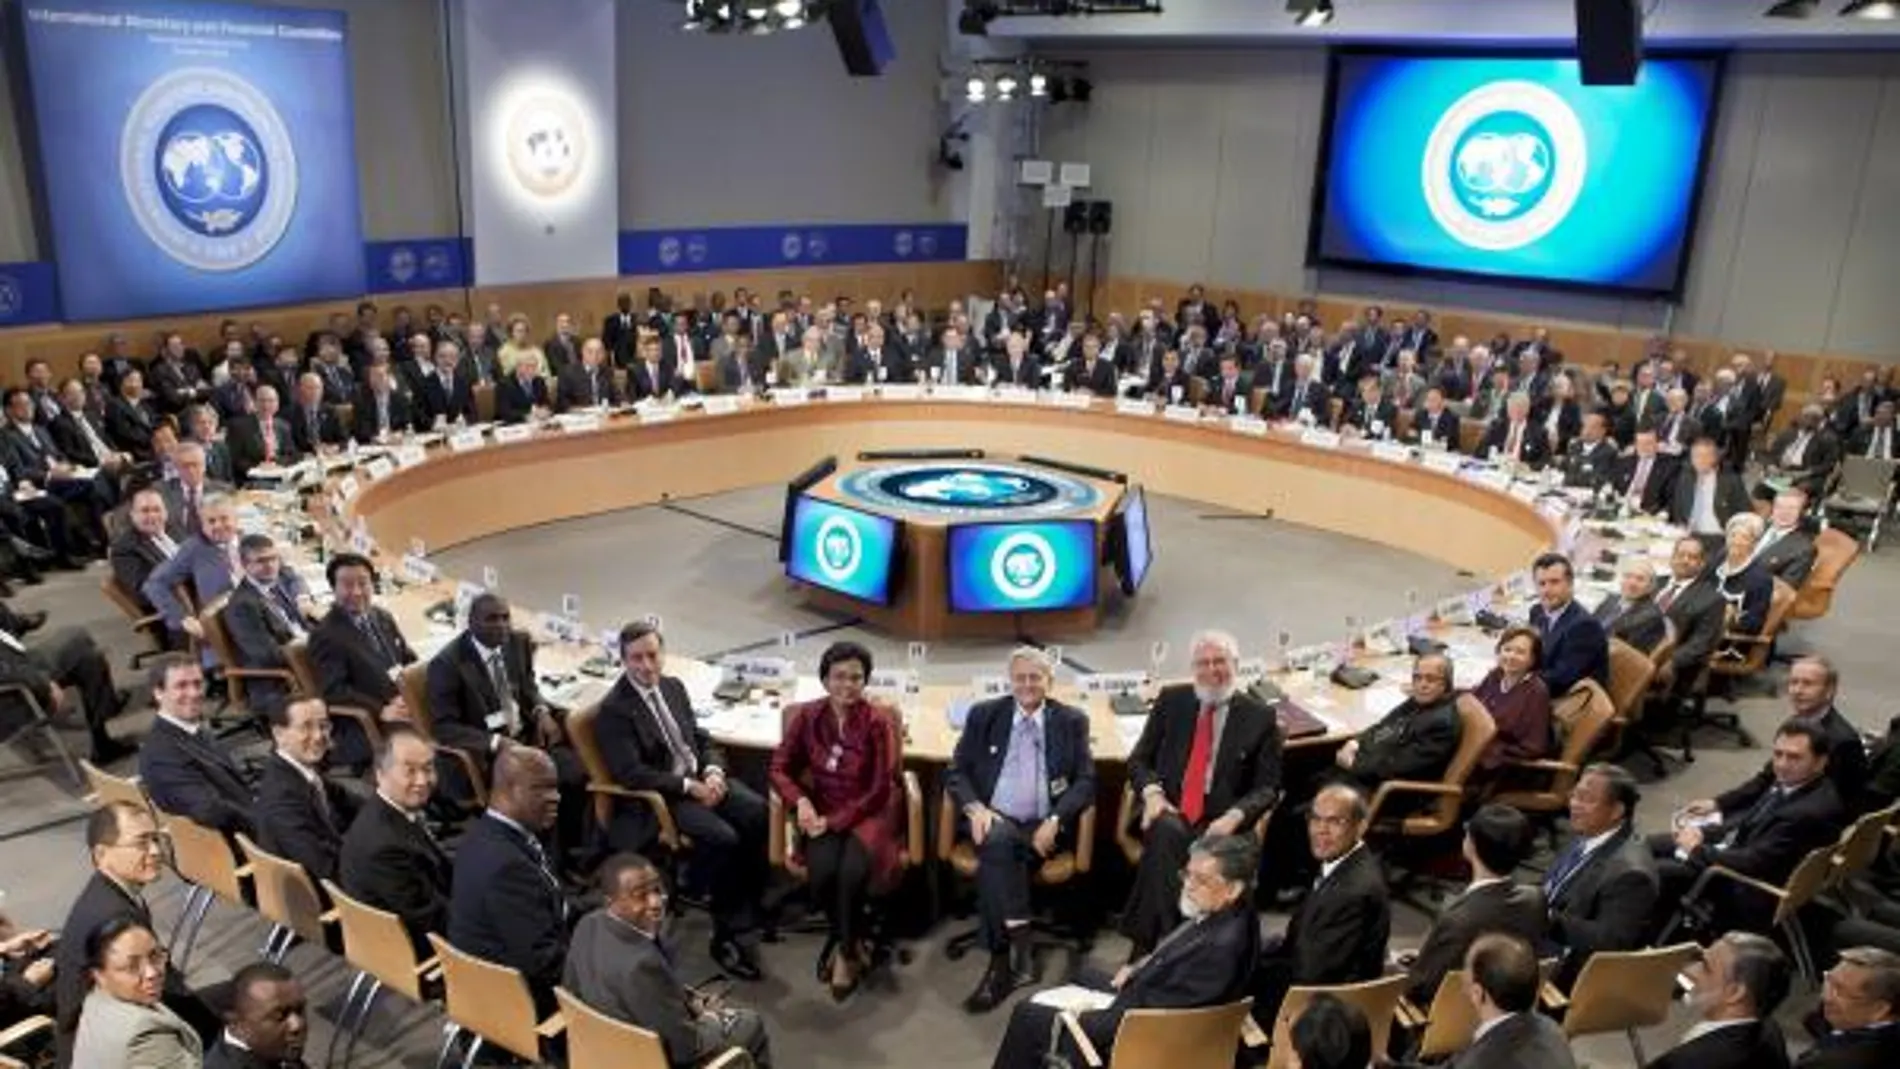 Los participantes en la reunión del FMI de este fin de semana posan para la cámara